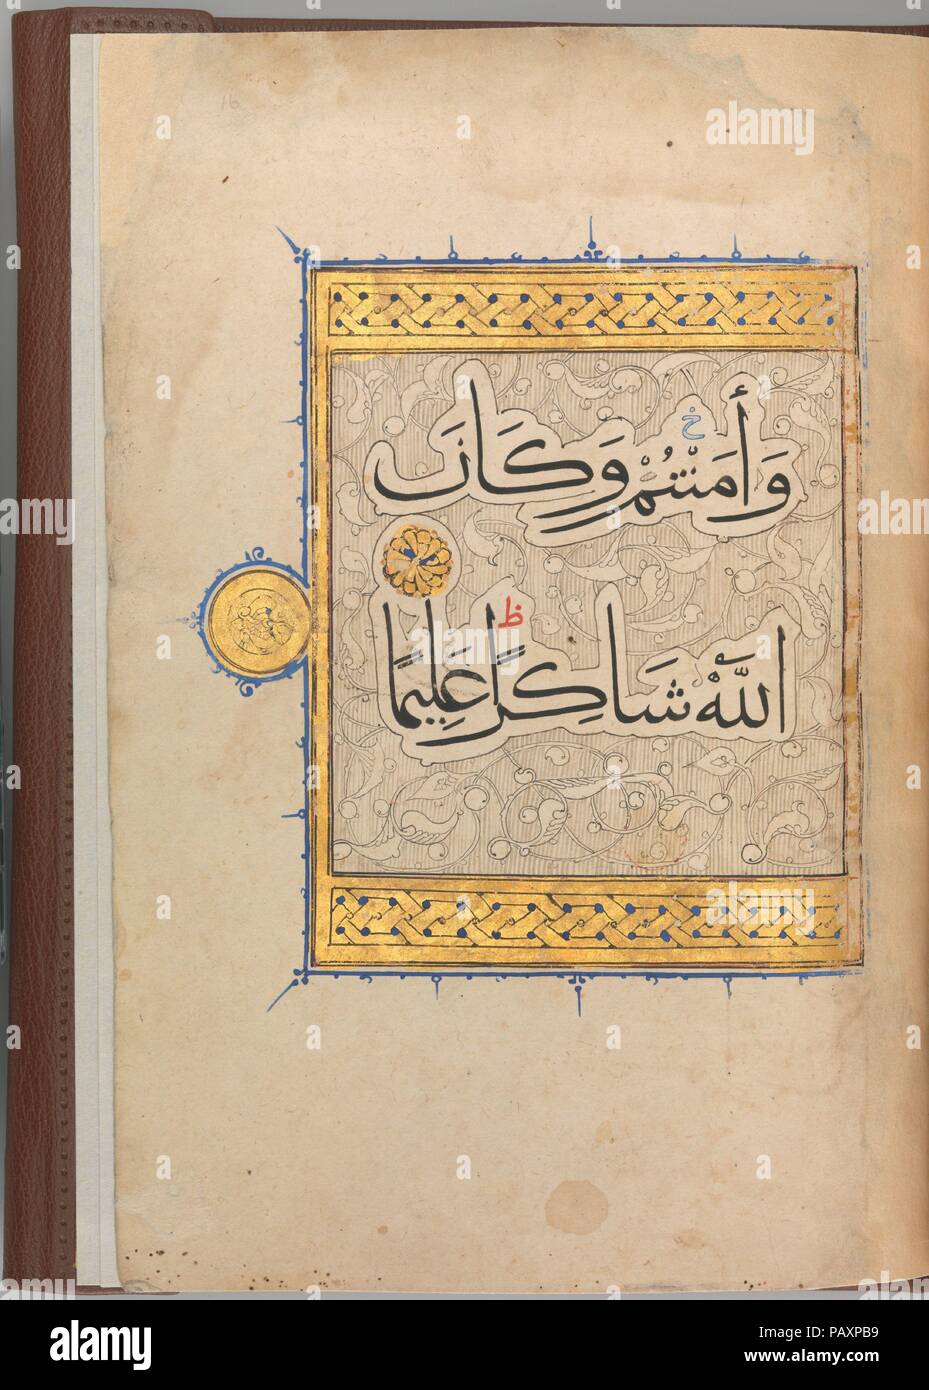 Sezione da un Corano manoscritto. Dimensioni: 10 7/16 x 7 1/2 in. (26,5 x 19 cm). Data: ca. 1320. In questa sezione di un Corano manoscritto su pergamena contiene 114-147 versetti della Sura 4 (al-Nisa', 'delle donne"). L'ultima pagina, il testo è incorniciato da un bordo dorato ed è impostato all'interno del cloud-bande contro uno sfondo di pergamene. Lo stile dello script è corsivo muhaqqaq, canonizzata nel XIII secolo, che è di dimensioni maggiori rispetto alle dimensioni di naskhi e impiegate principalmente per grandi Qur'ANS. La pelle marrone, legame con fregi dorati in stile Mamluk, è una recente aggiunta. Museo: Metropolitan Museu Foto Stock